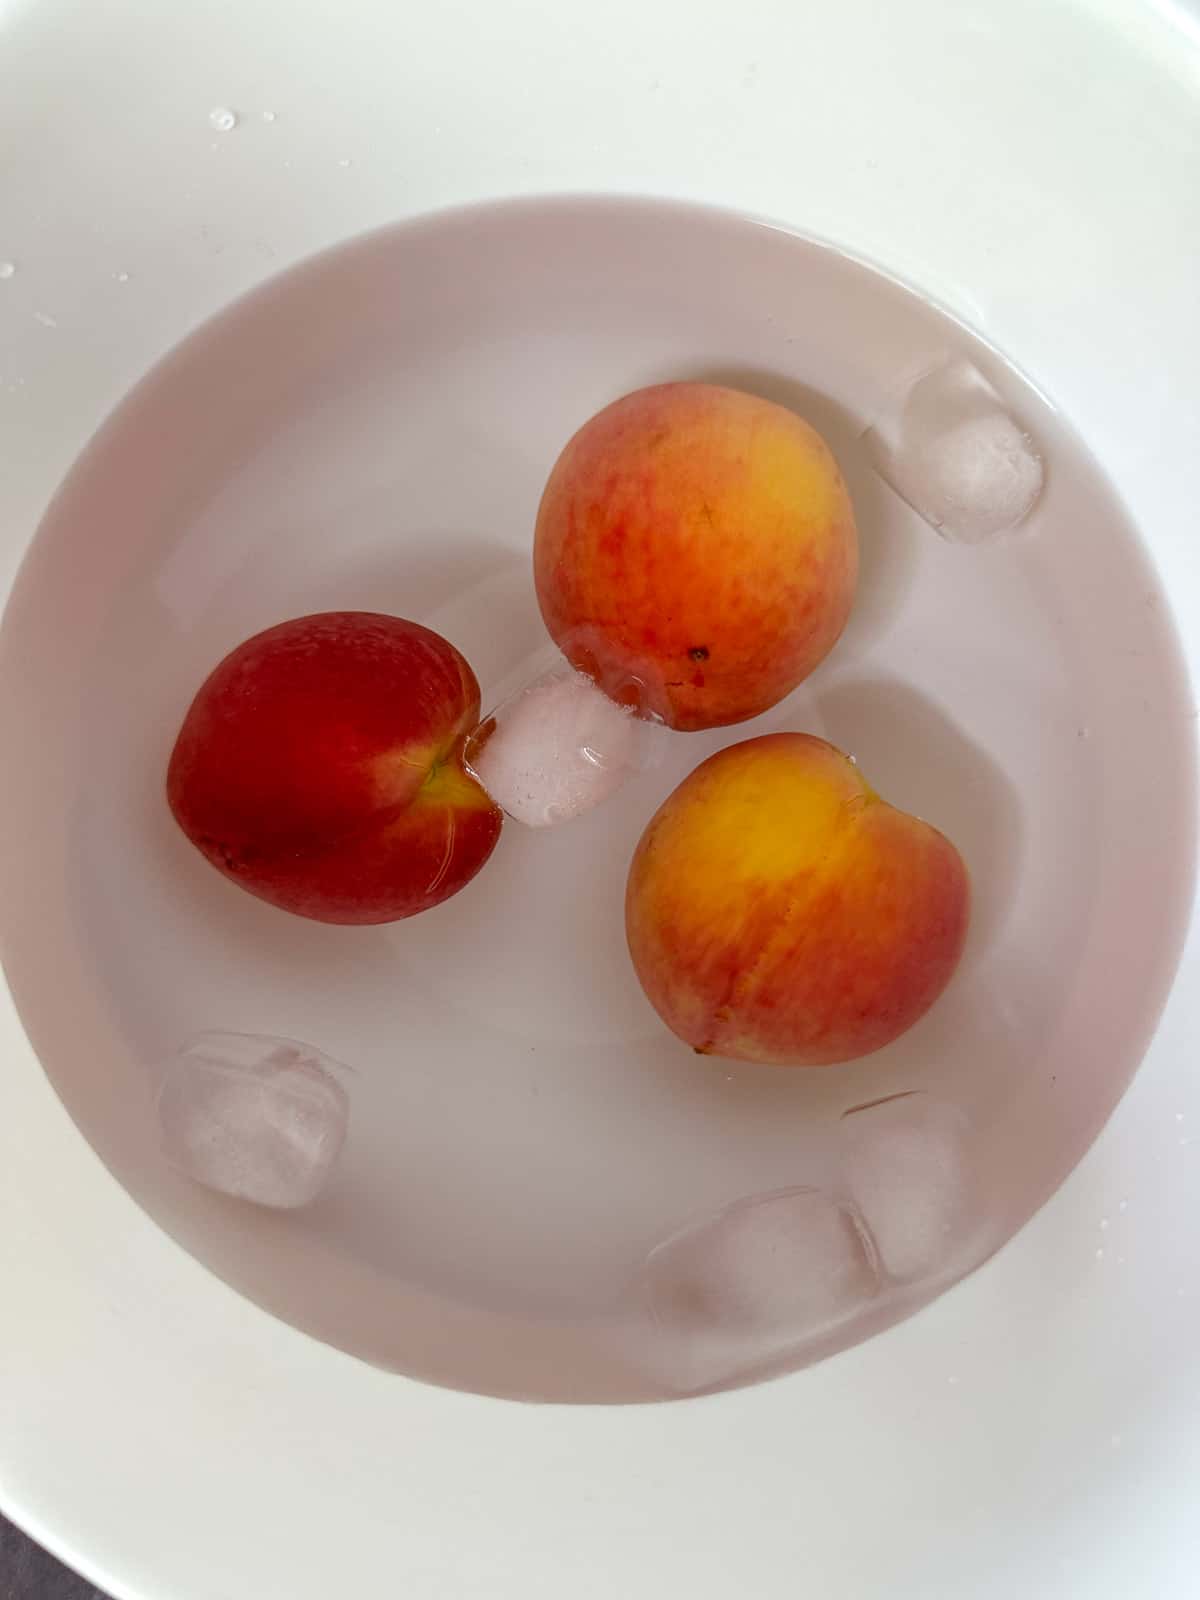 3 peaches in an ice water bath